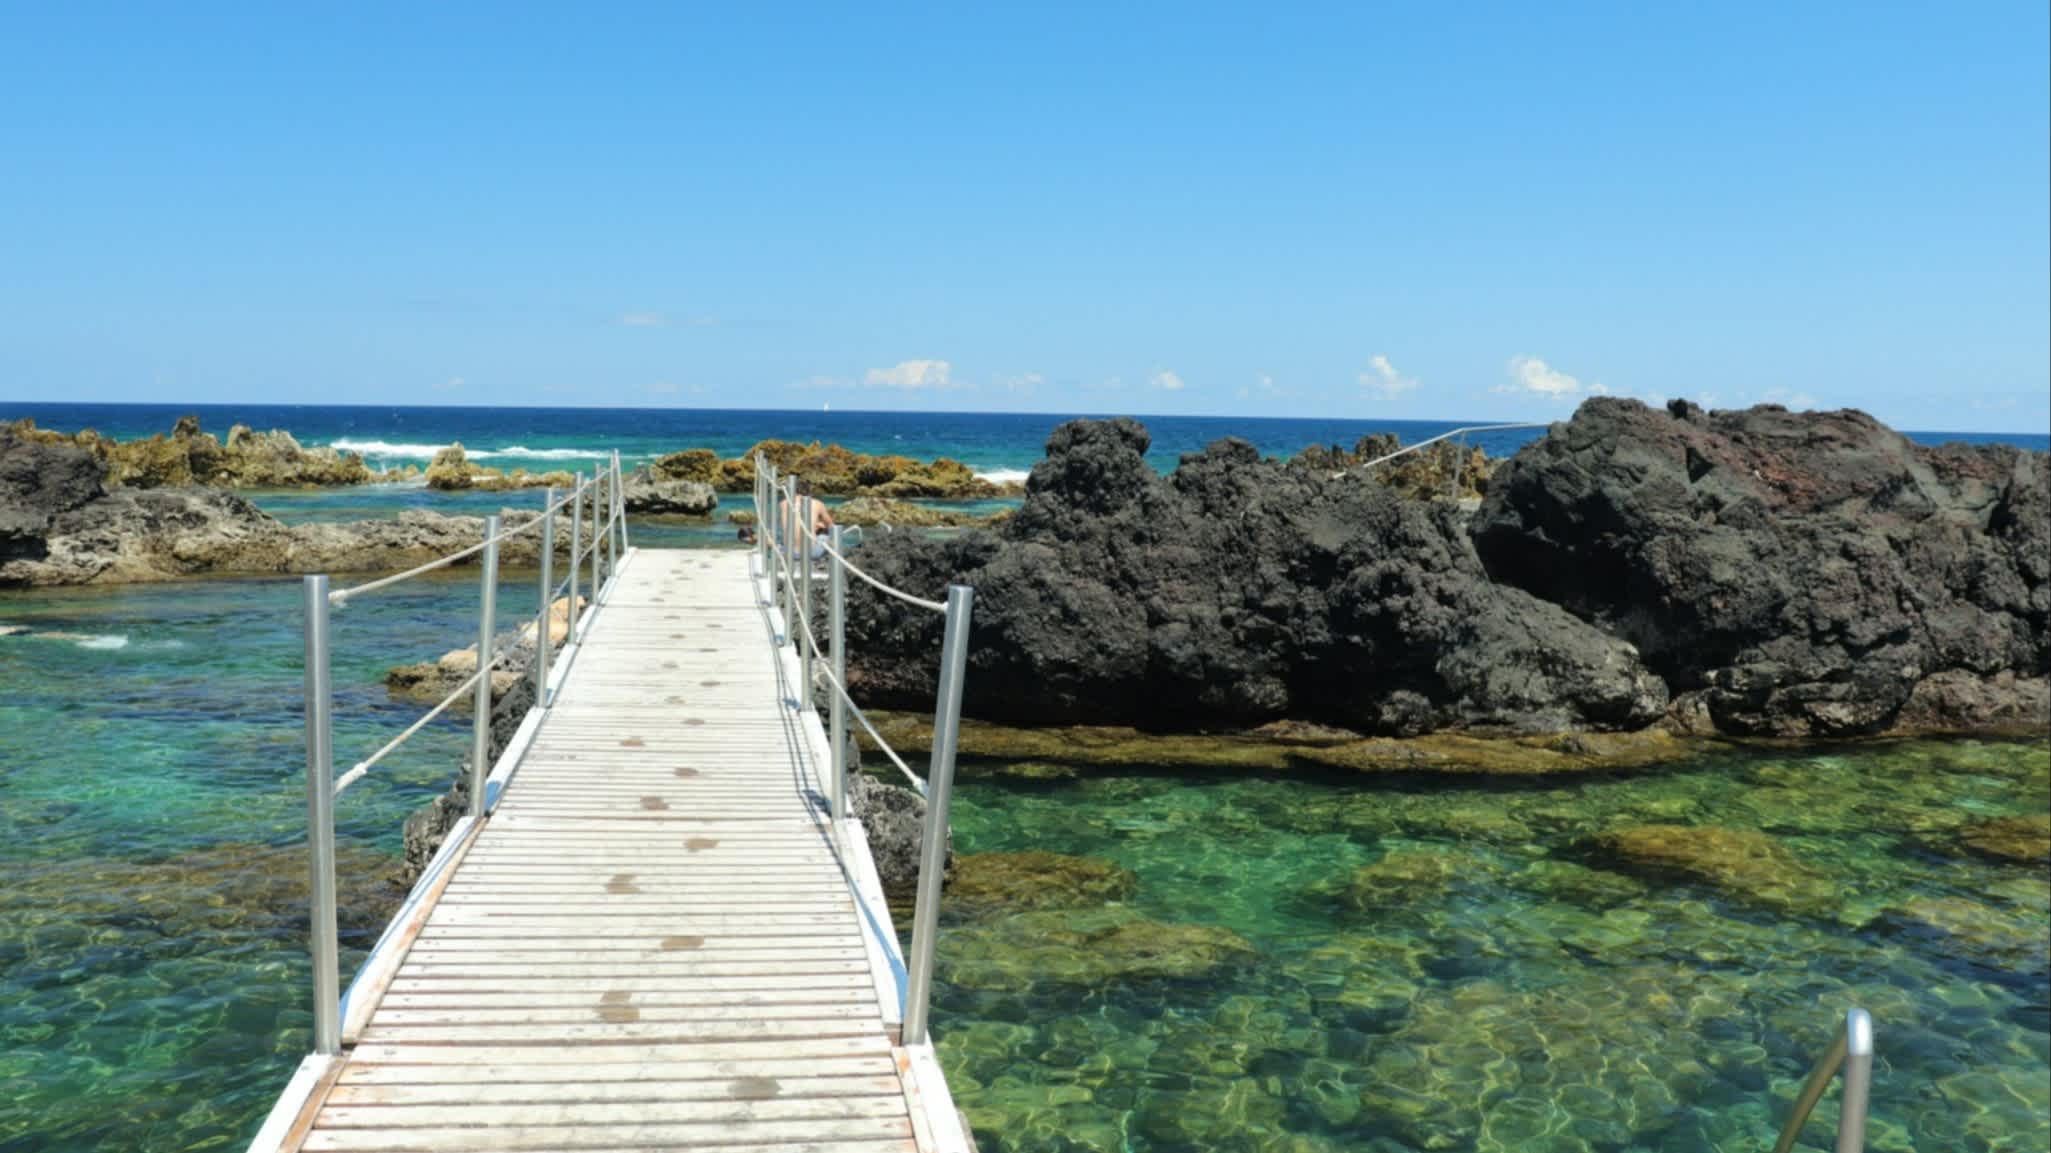 Passerelle menant à une piscine naturelle à Biscoitos sur l'île de Terceira, aux Açores, au Portugal.
